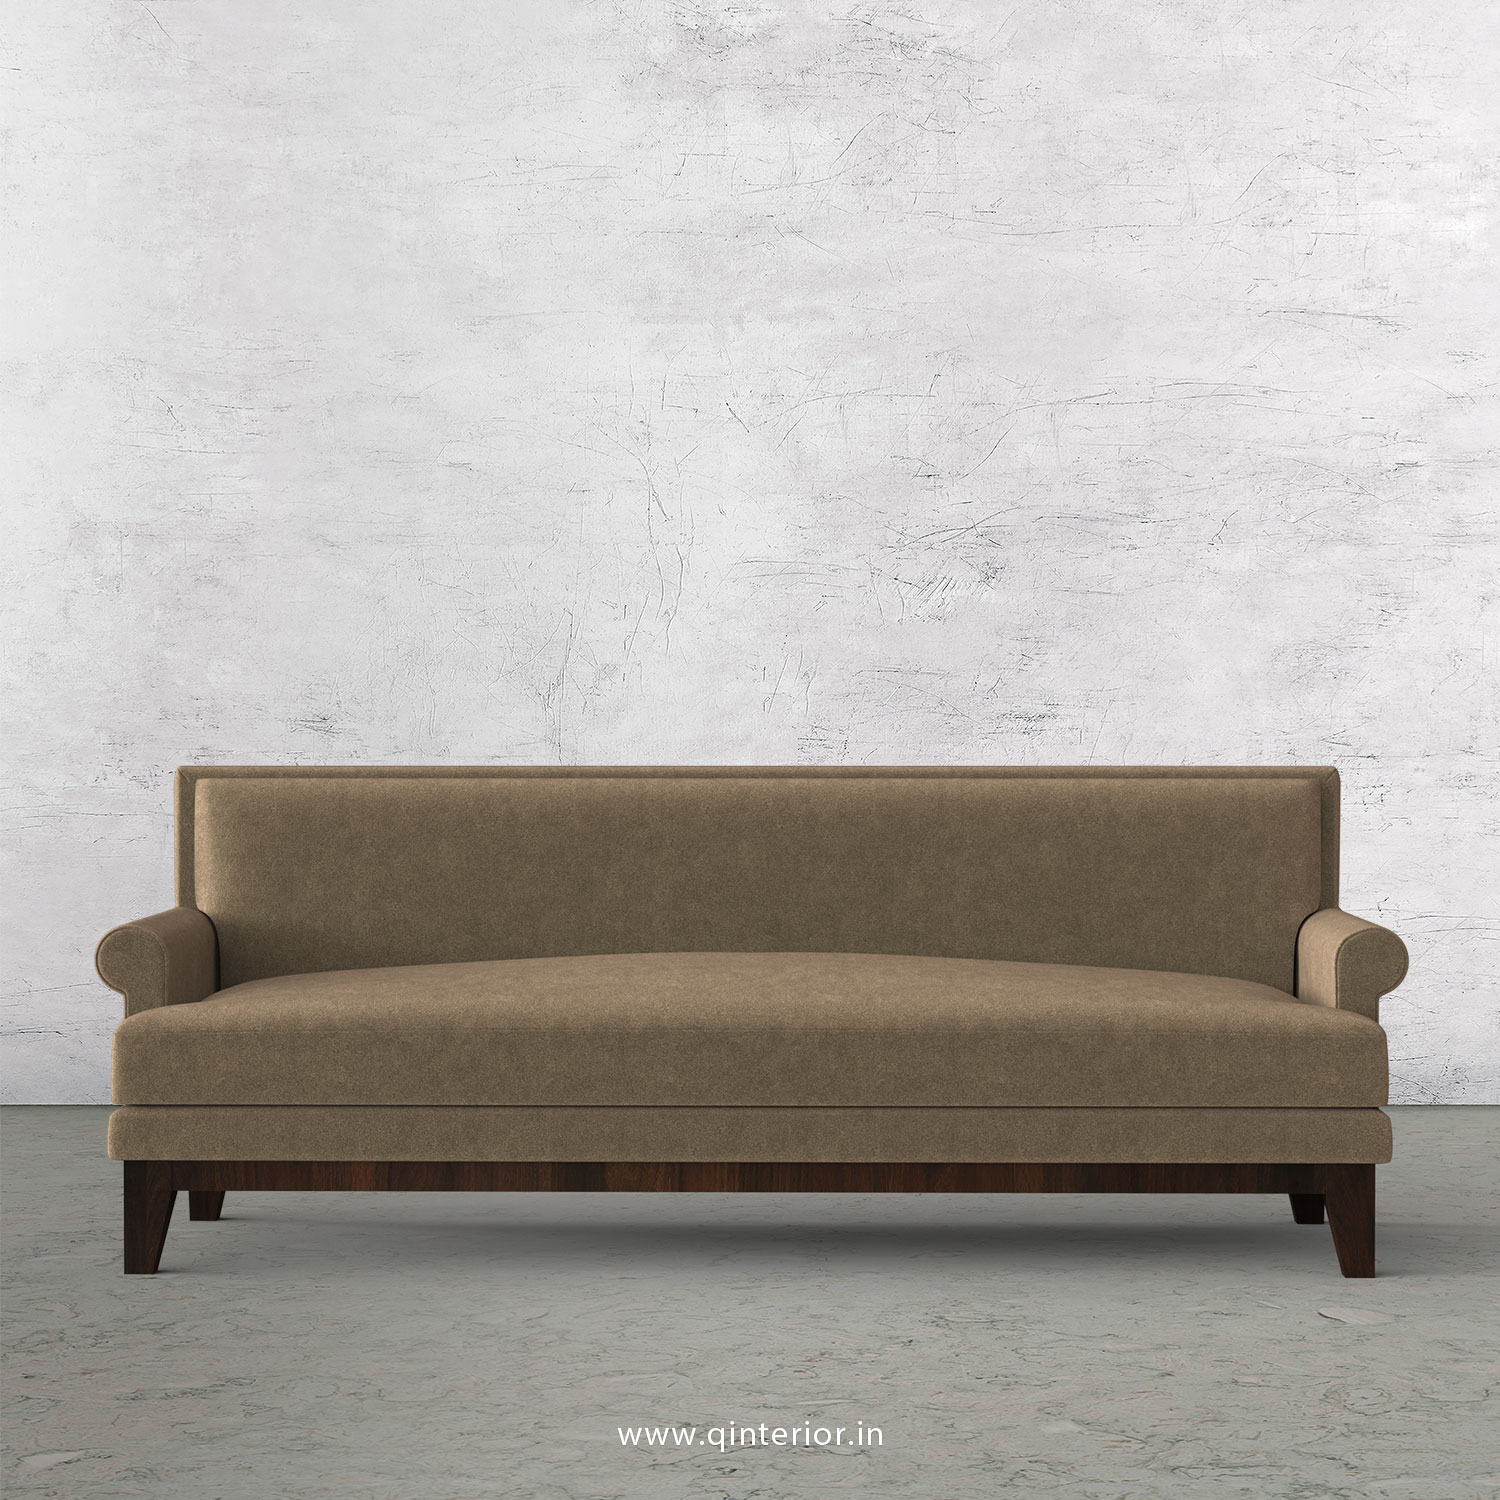 Aviana 3 Seater Sofa in Velvet Fabric - SFA001 VL11